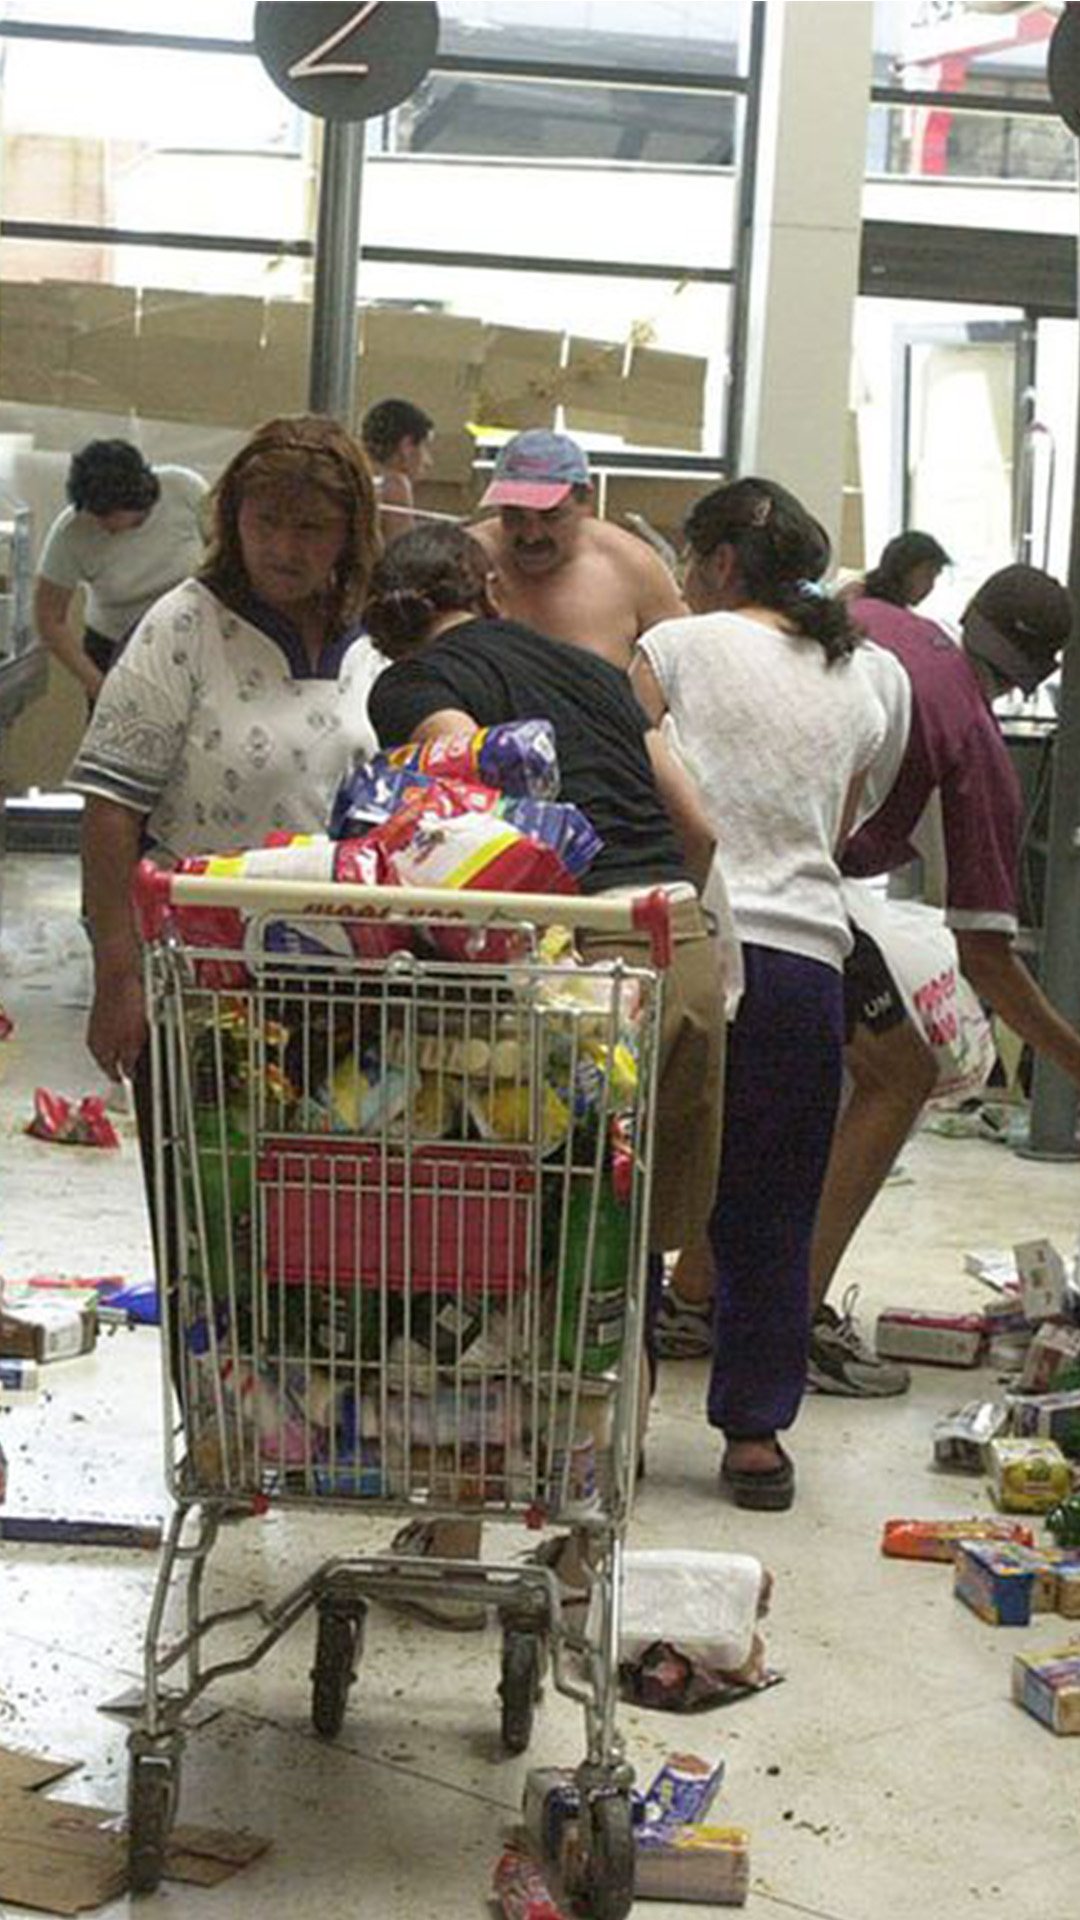 Saqueo en un supermercado en 2001. En medio de la góndola hay un carrito de supermercado lleno de productos, productos como galletitas, yerba y té desparramados sobre el piso. Tres mujeres y dos hombres se llevan cosas.